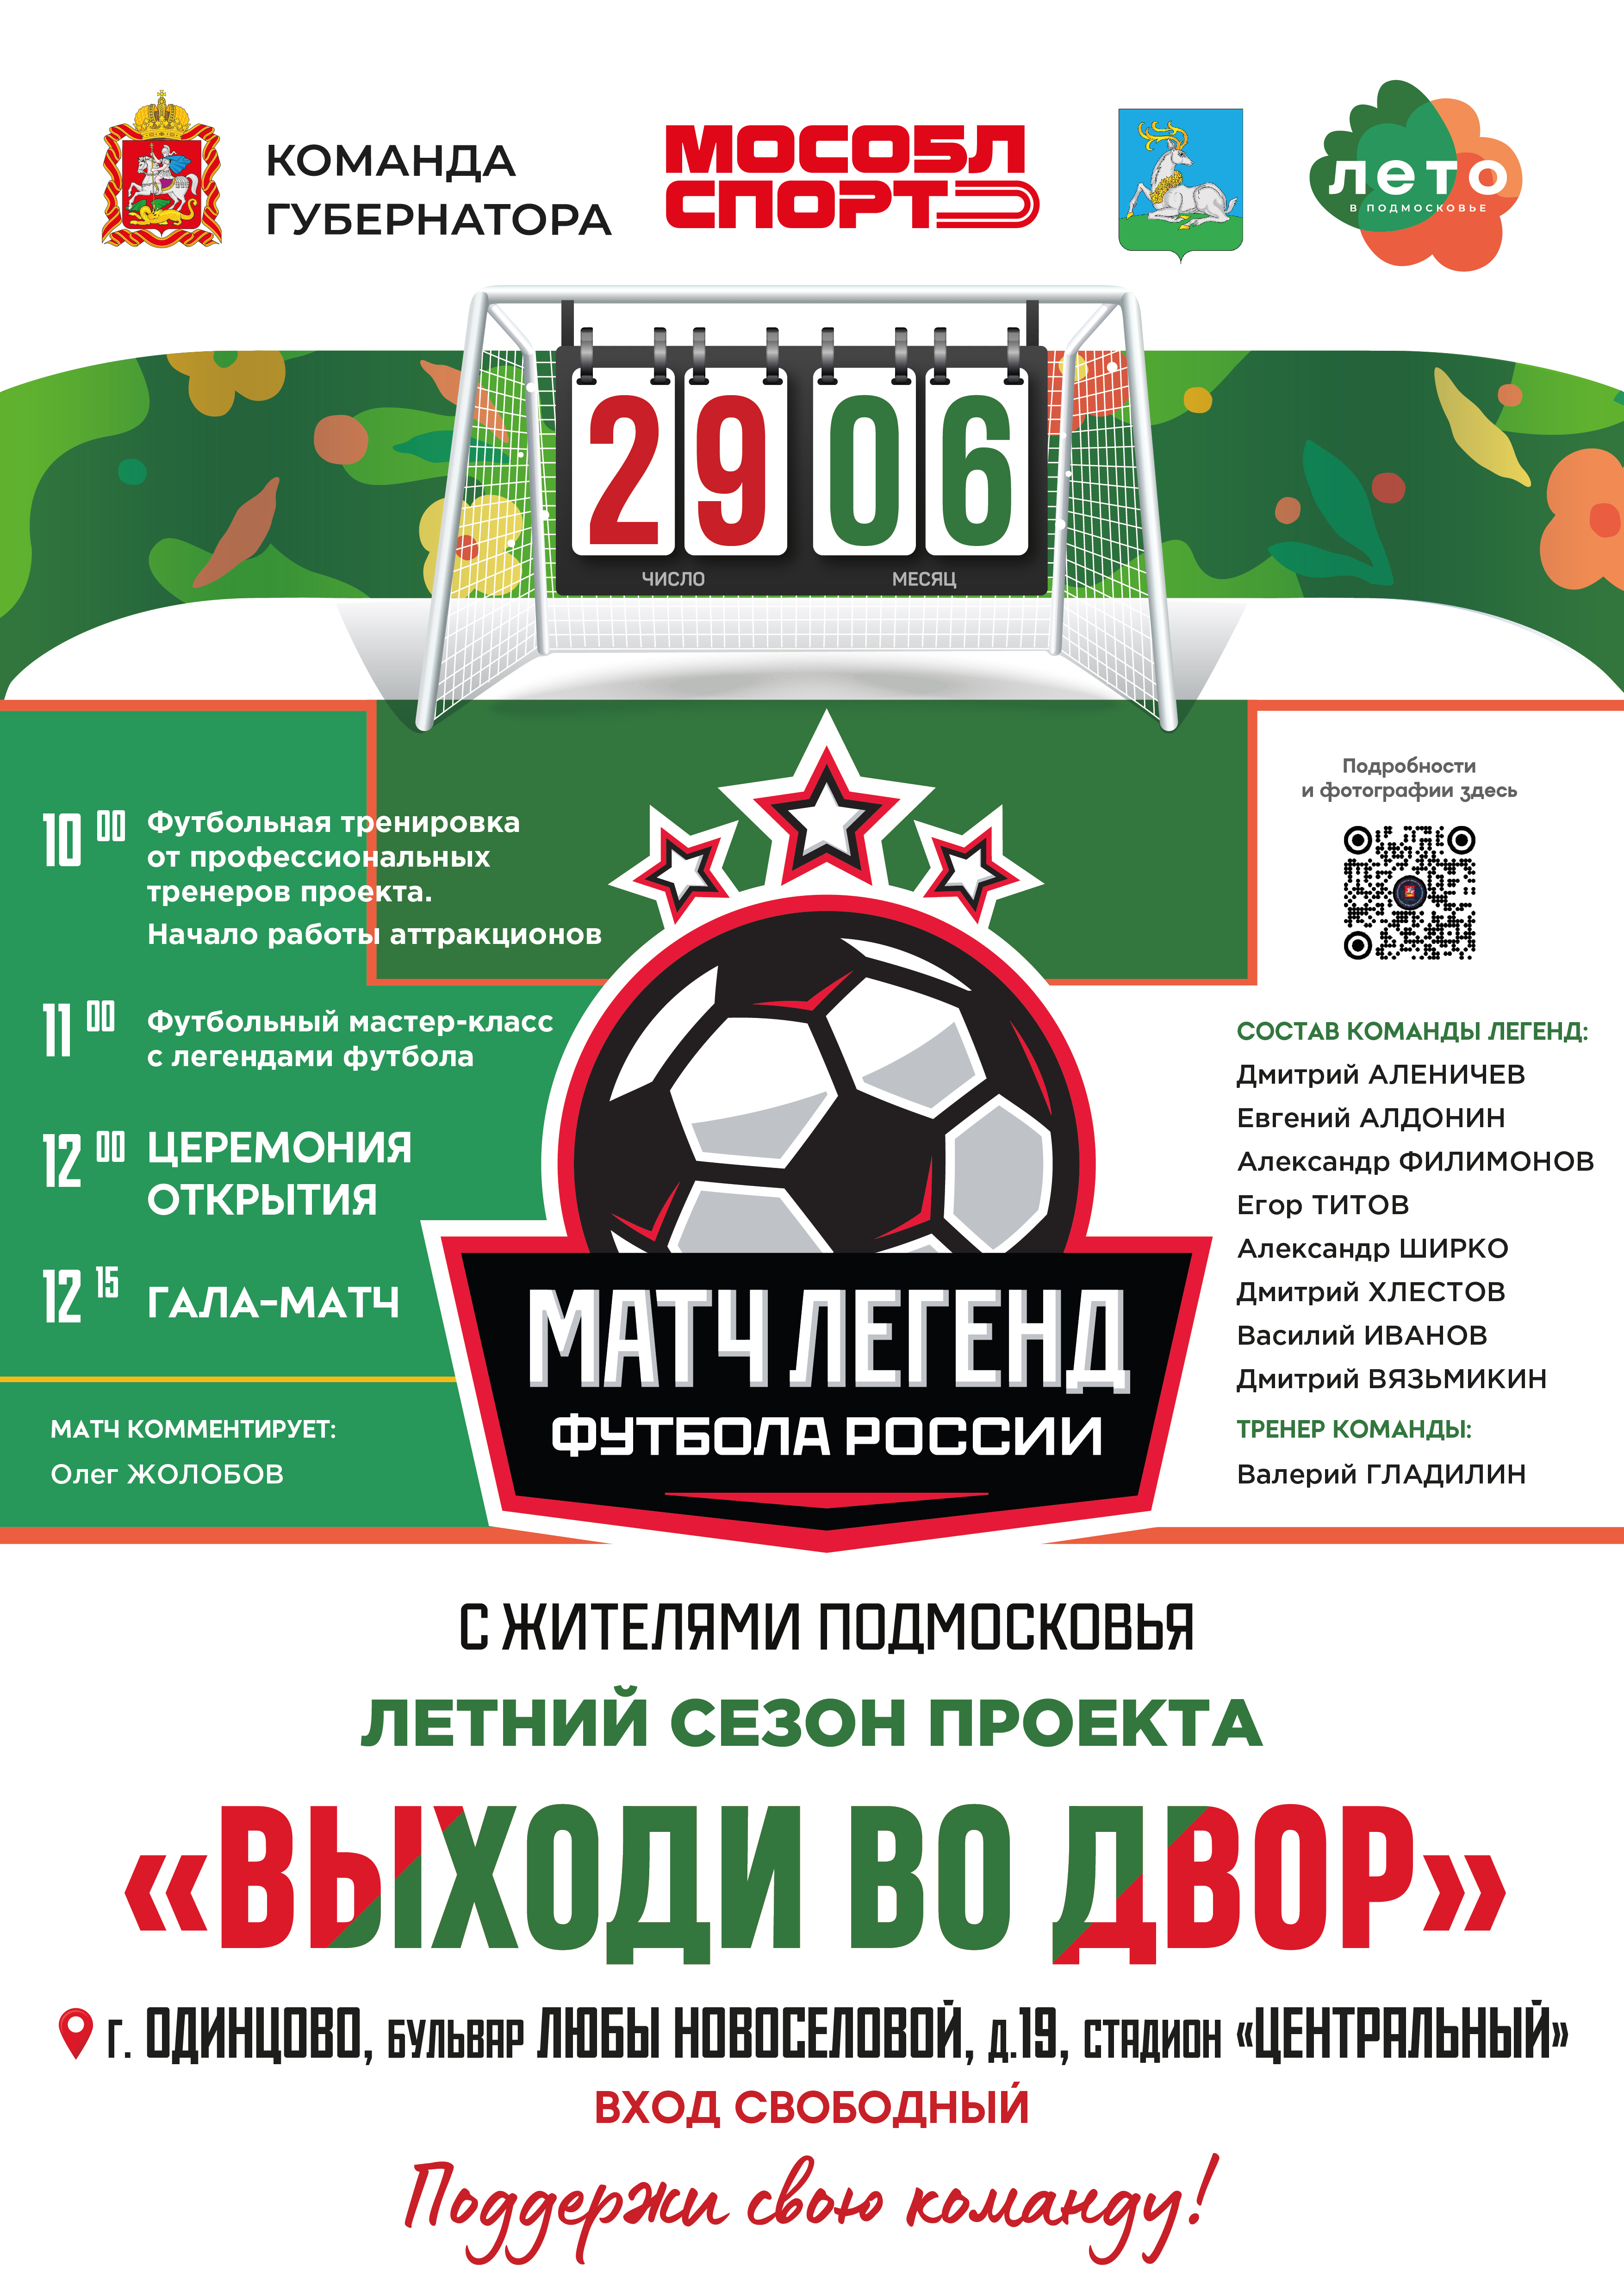 Легенды российского футбола проведут матч с жителями Одинцово